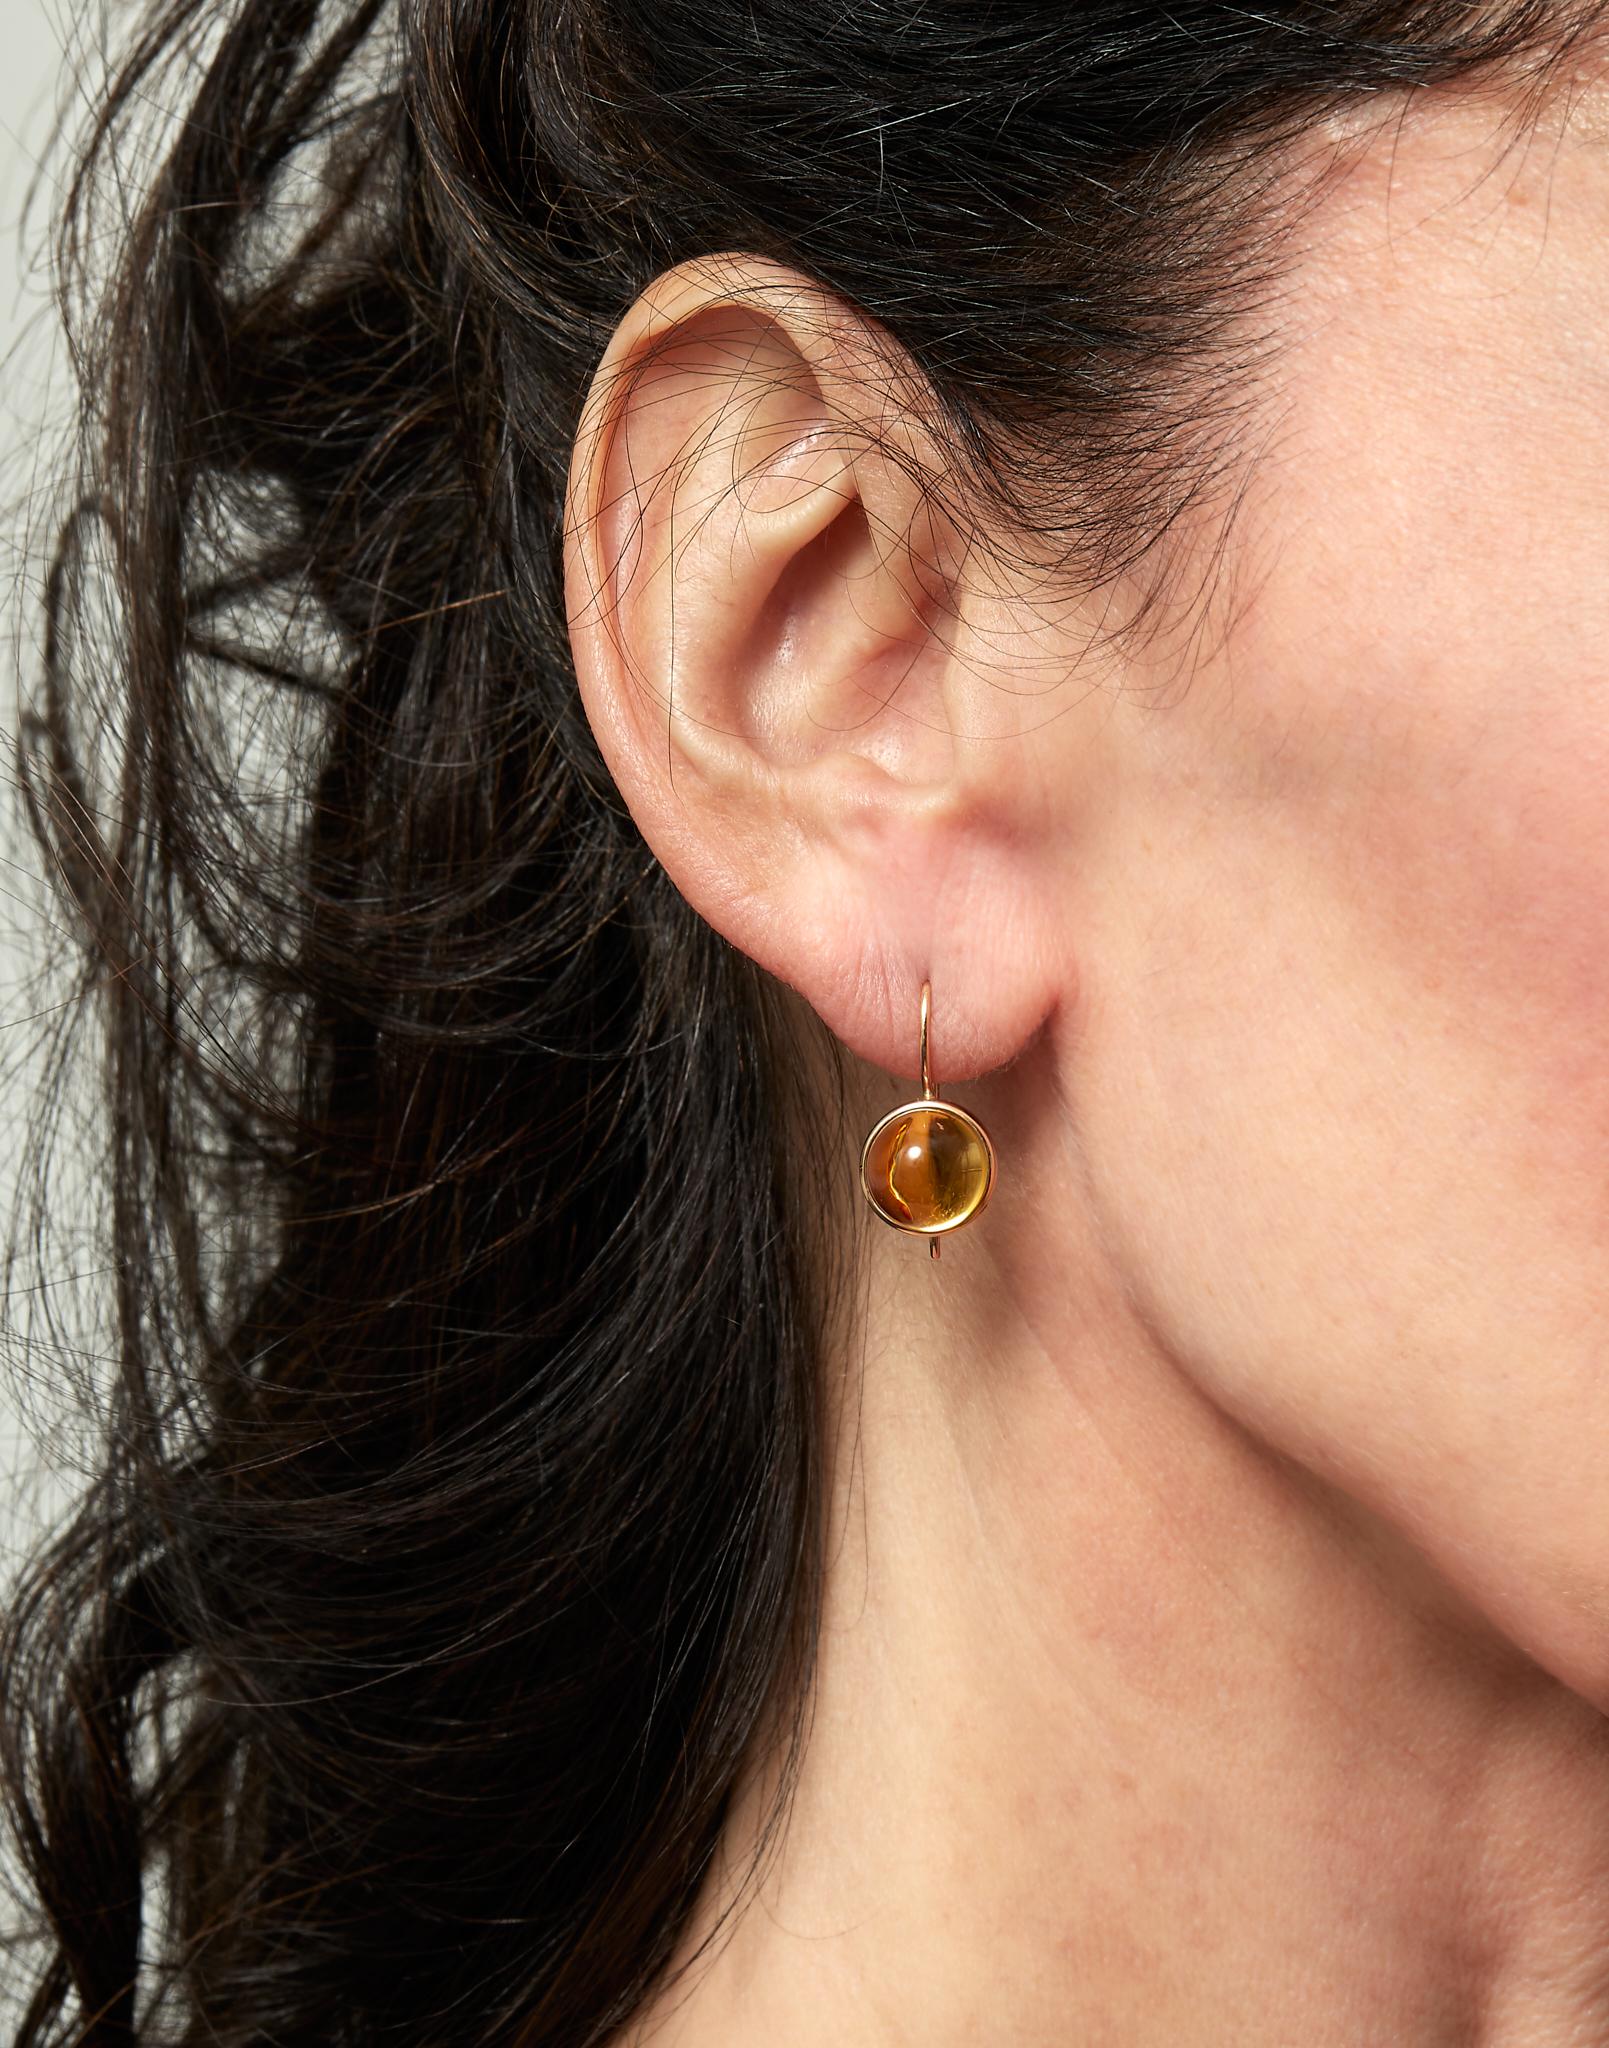 Conçues par Eva Soussana, artiste et fondatrice de Hera-Jewellery, ces boucles d'oreilles goutte élégantes et raffinées sont issues de la collection 